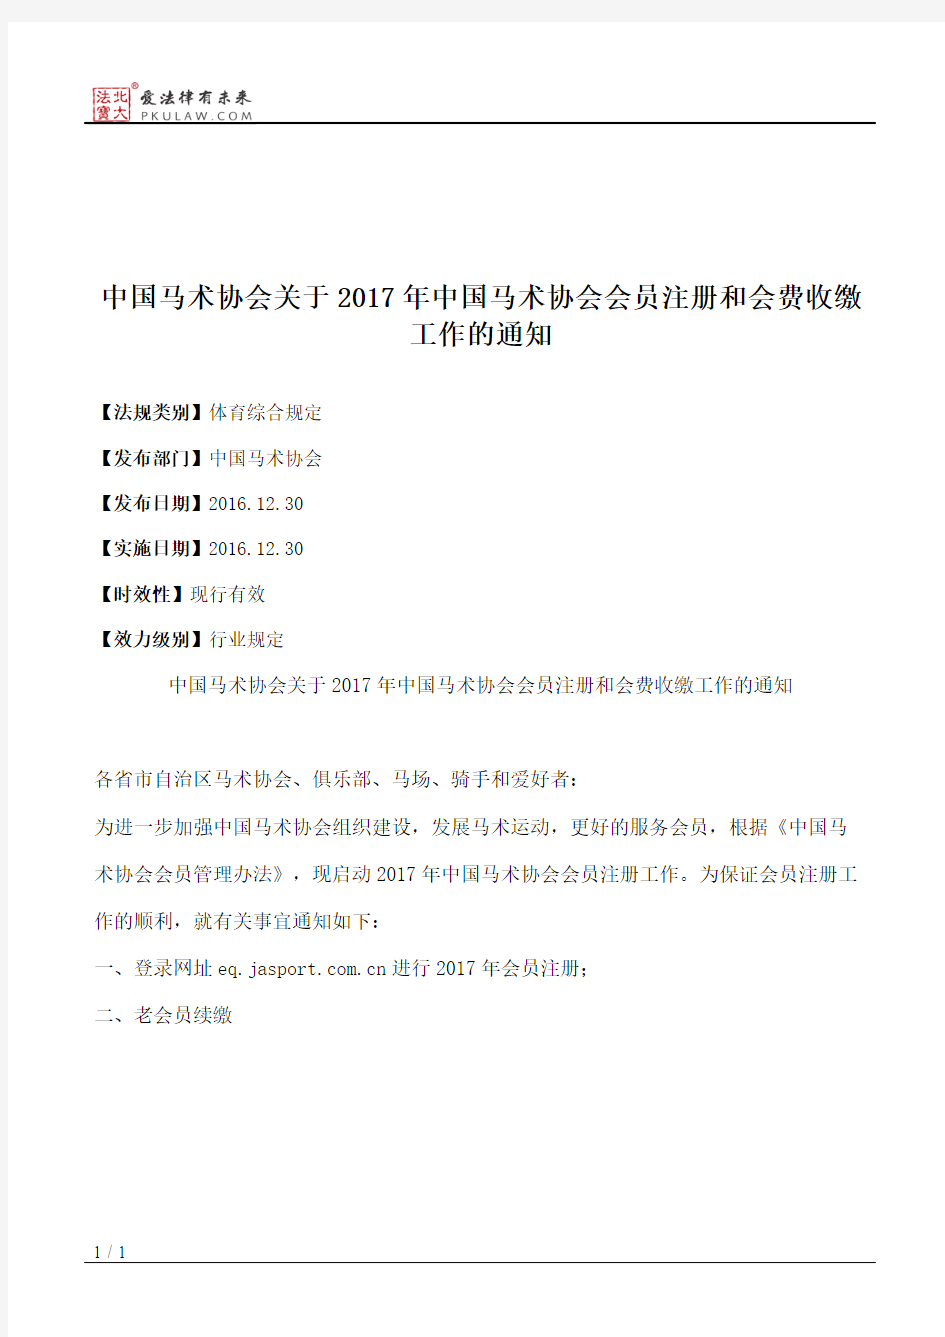 中国马术协会关于2017年中国马术协会会员注册和会费收缴工作的通知